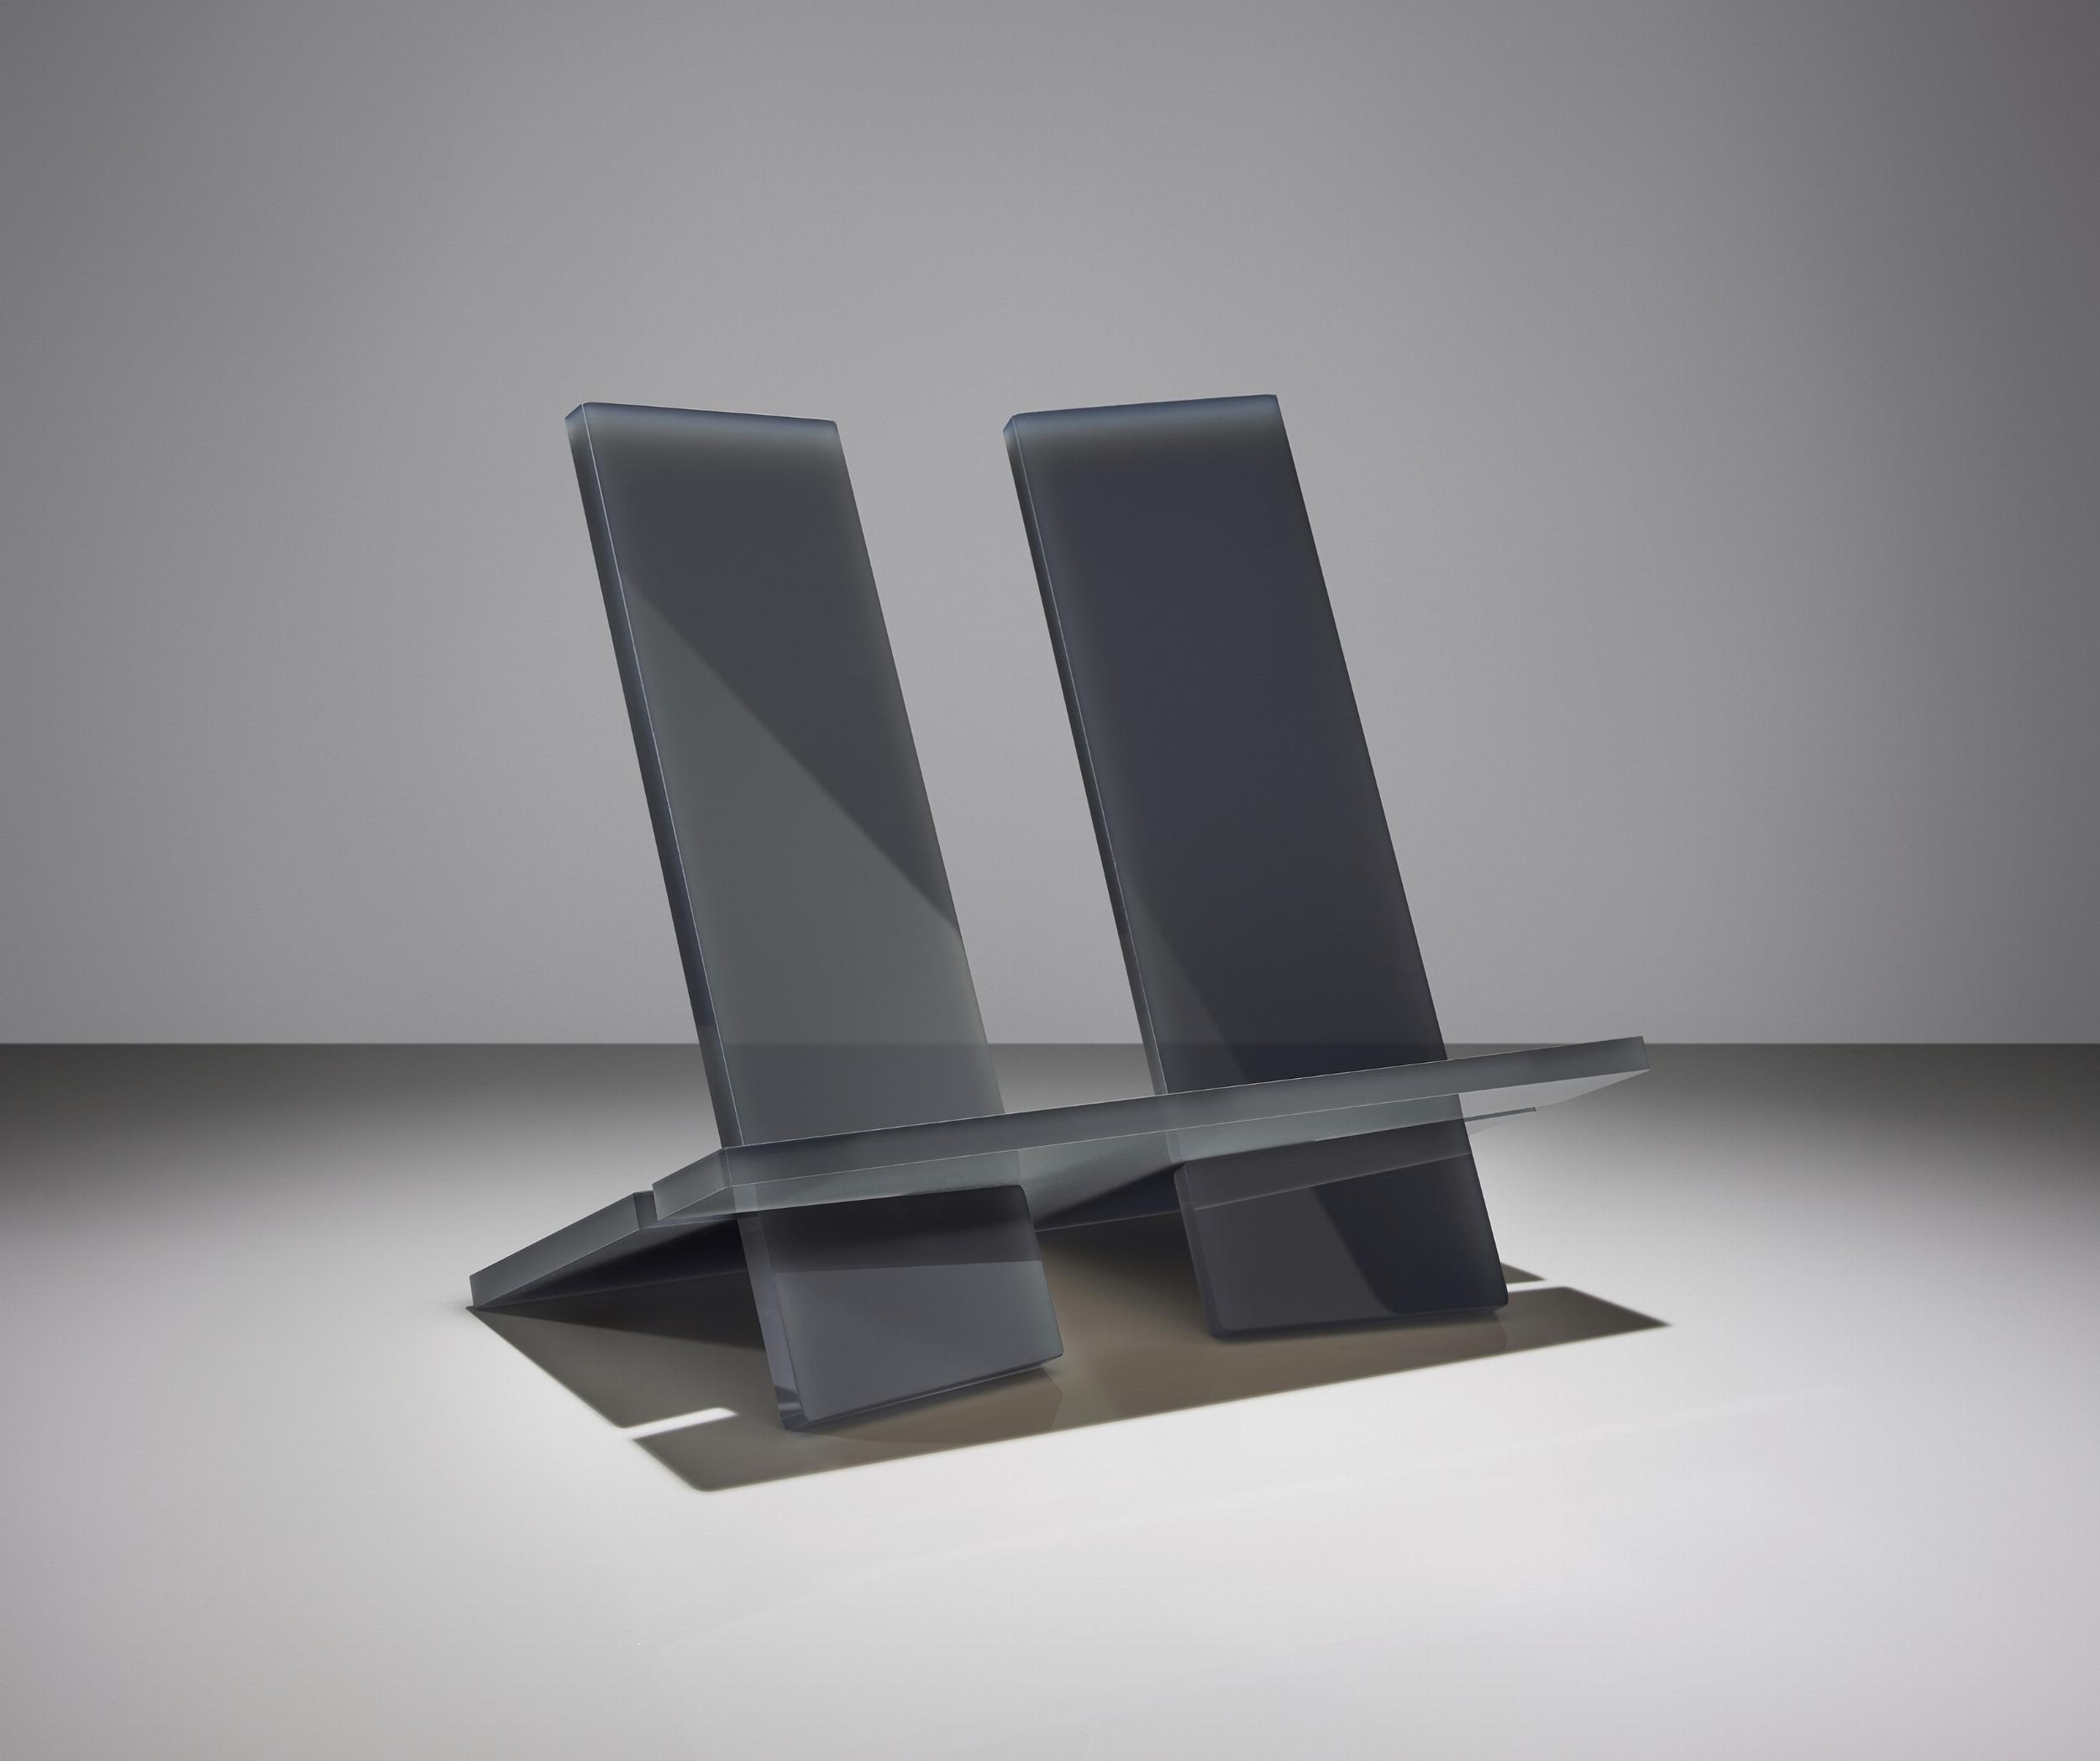 Taschen Bookstand Display Urban Grey, Size L